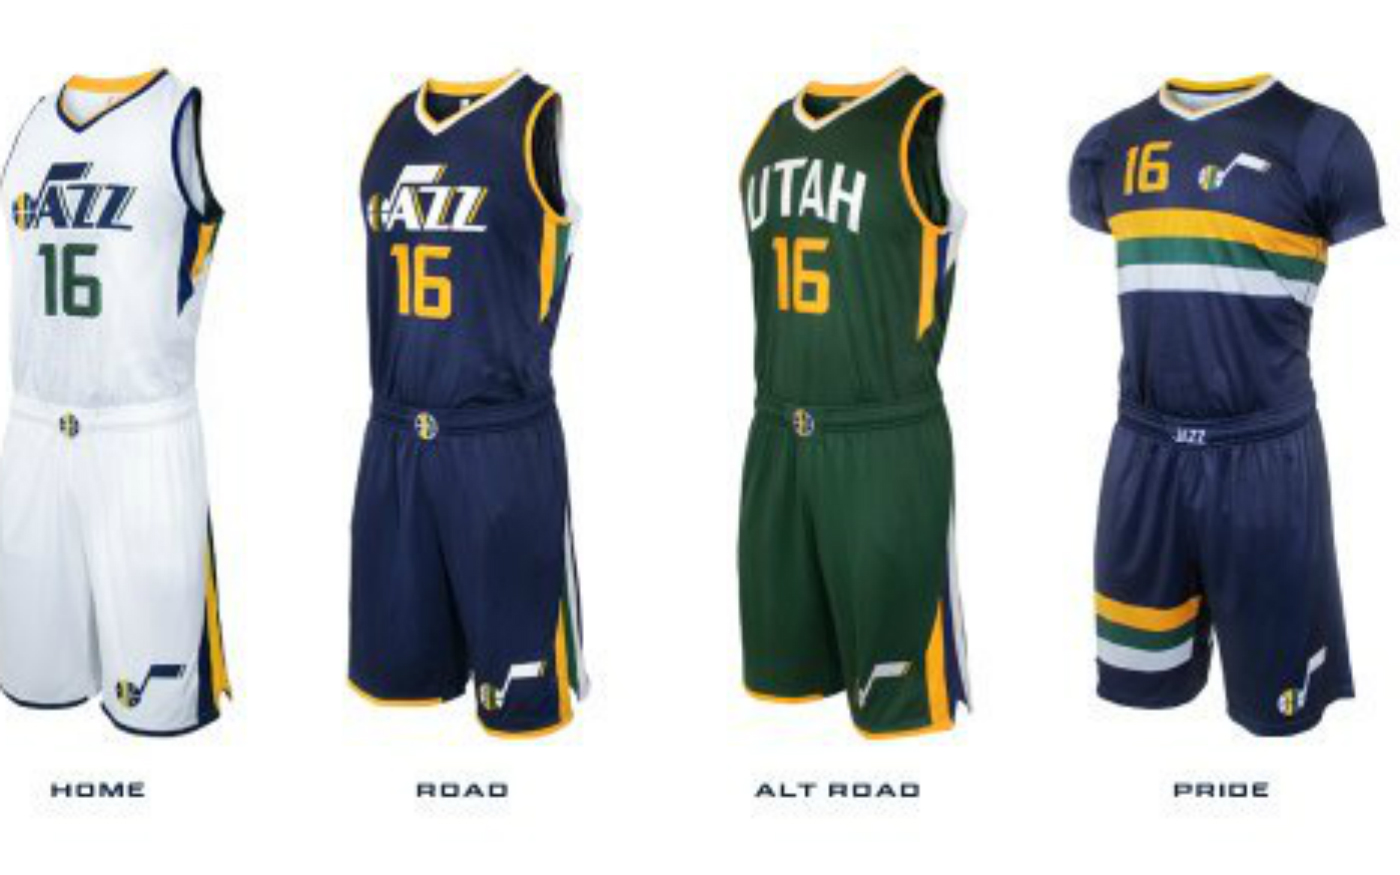 Voici les 4 nouveaux maillots du Utah Jazz